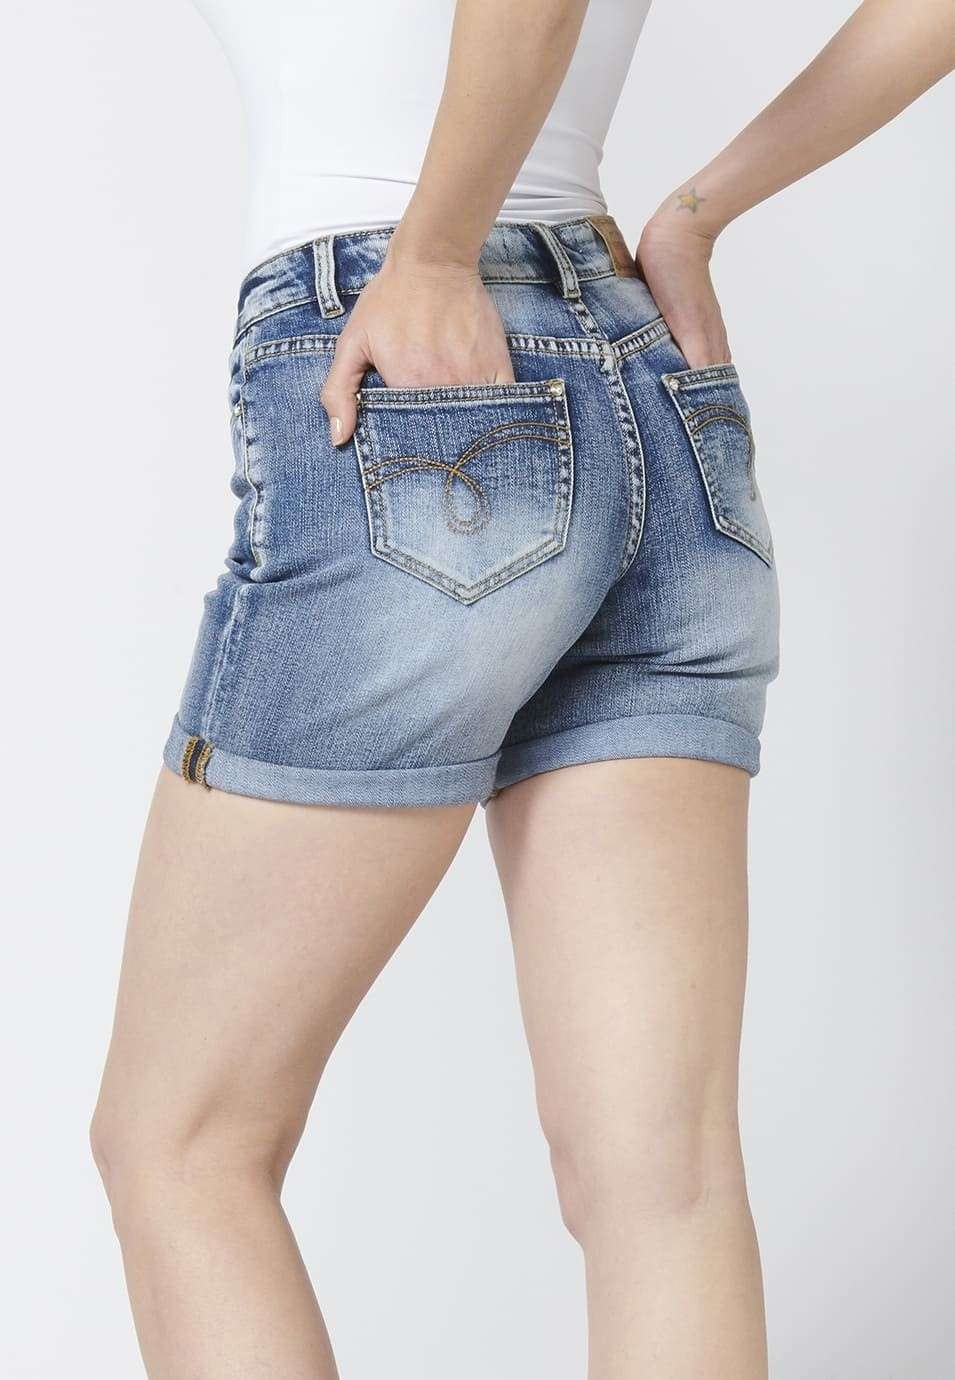 Pantalons curts dona denim short texà elàstic a sobre genoll detalls amb trencats